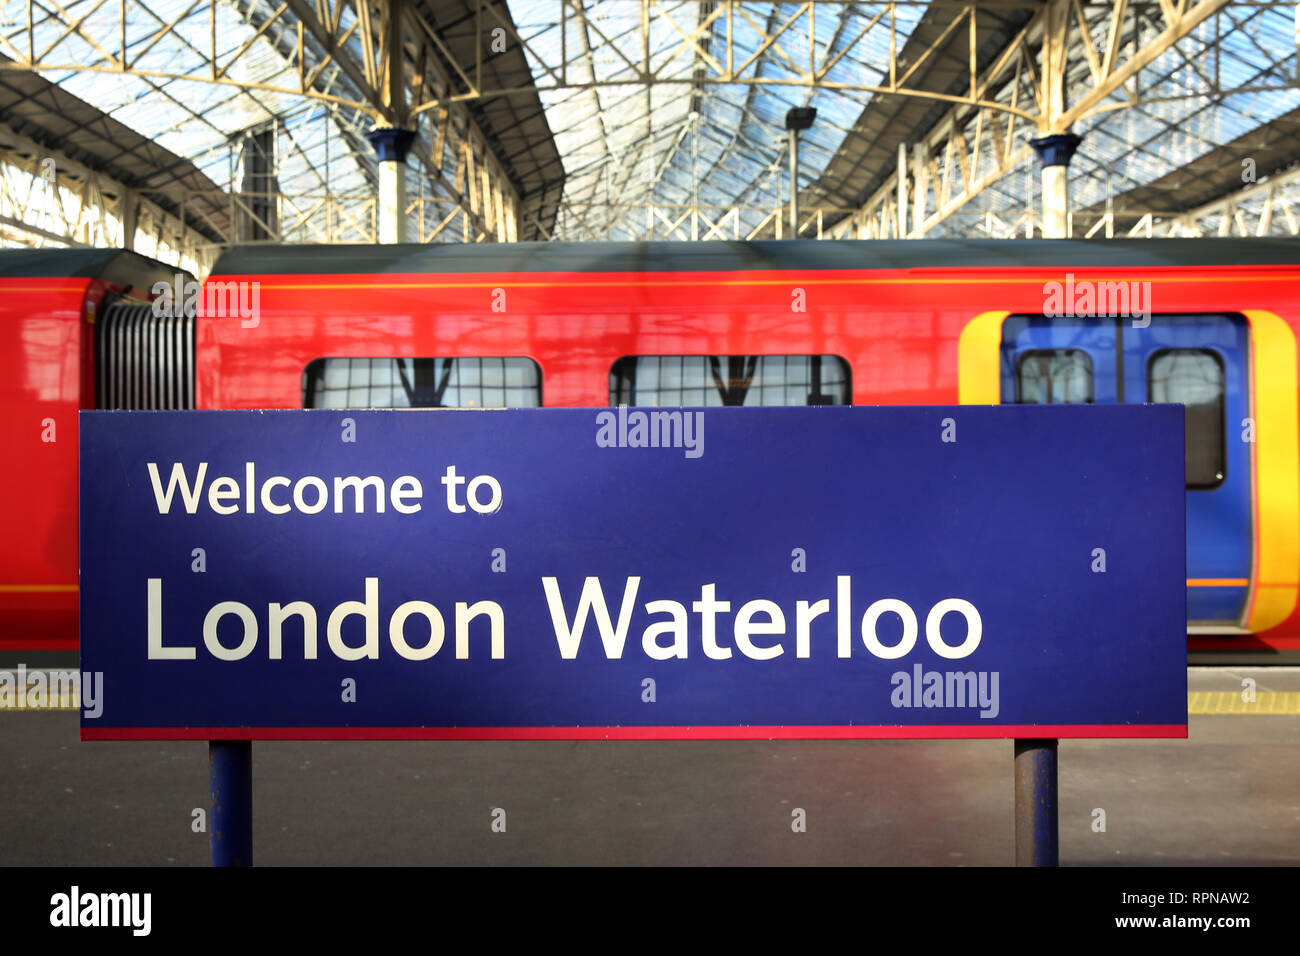 Stazione Waterloo di Londra con alcuni treni in background, Inghilterra. Foto Stock